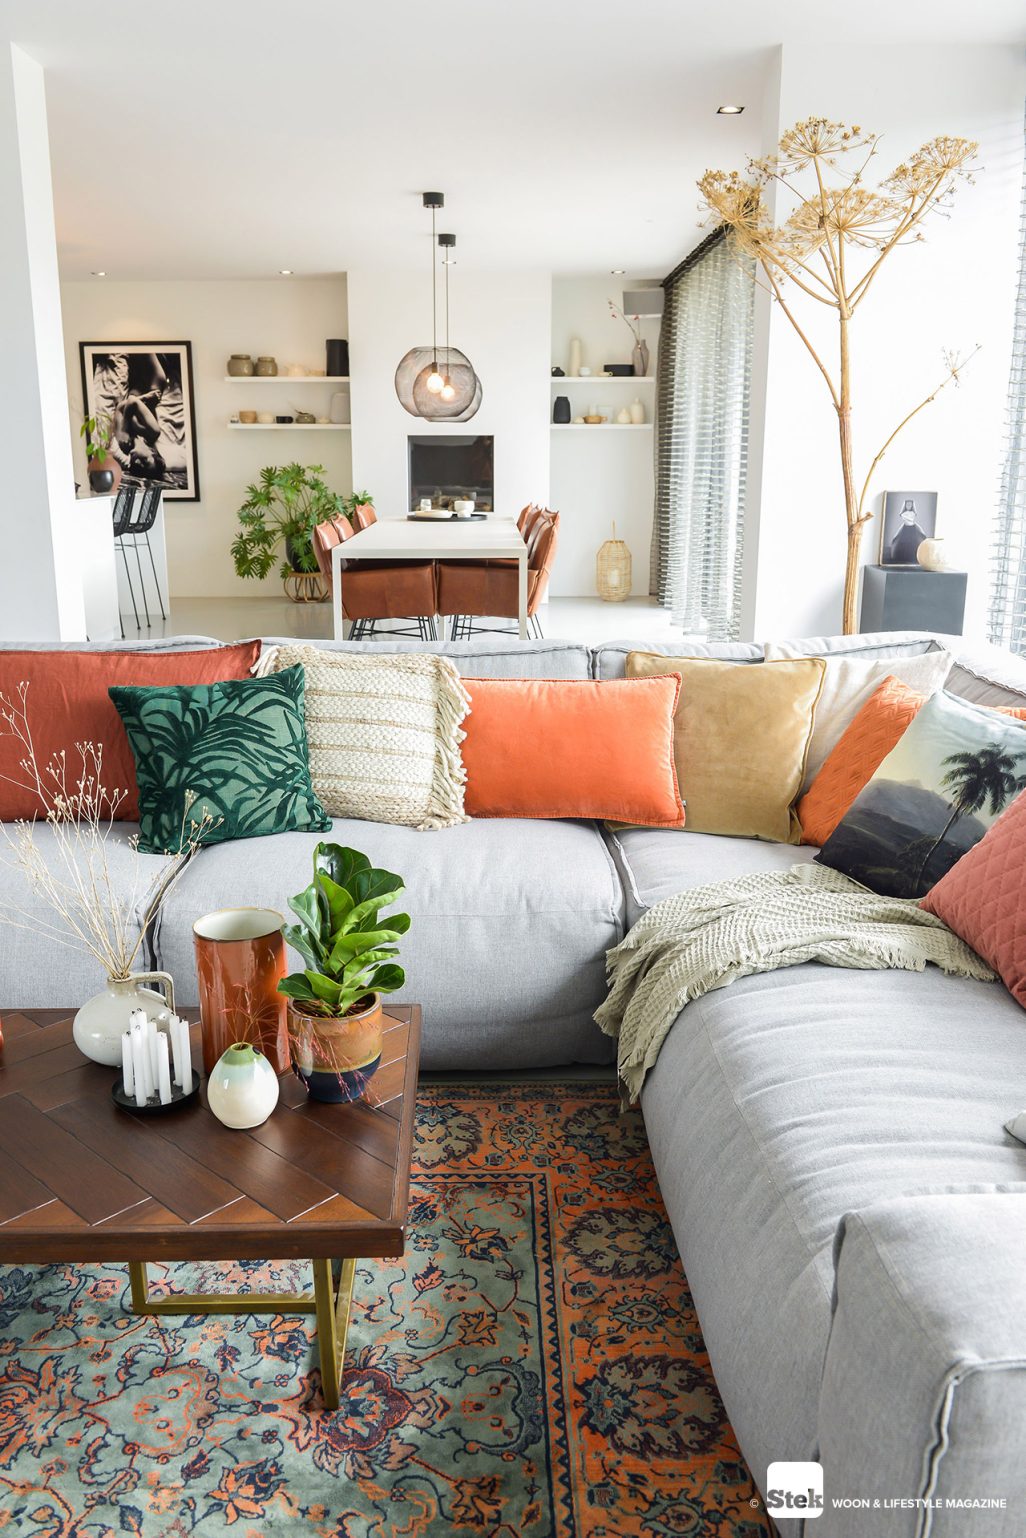 Hoe kun je de ruimte in een kleine woonkamer optimaal benutten? - Stek Woon Lifestyle Magazine